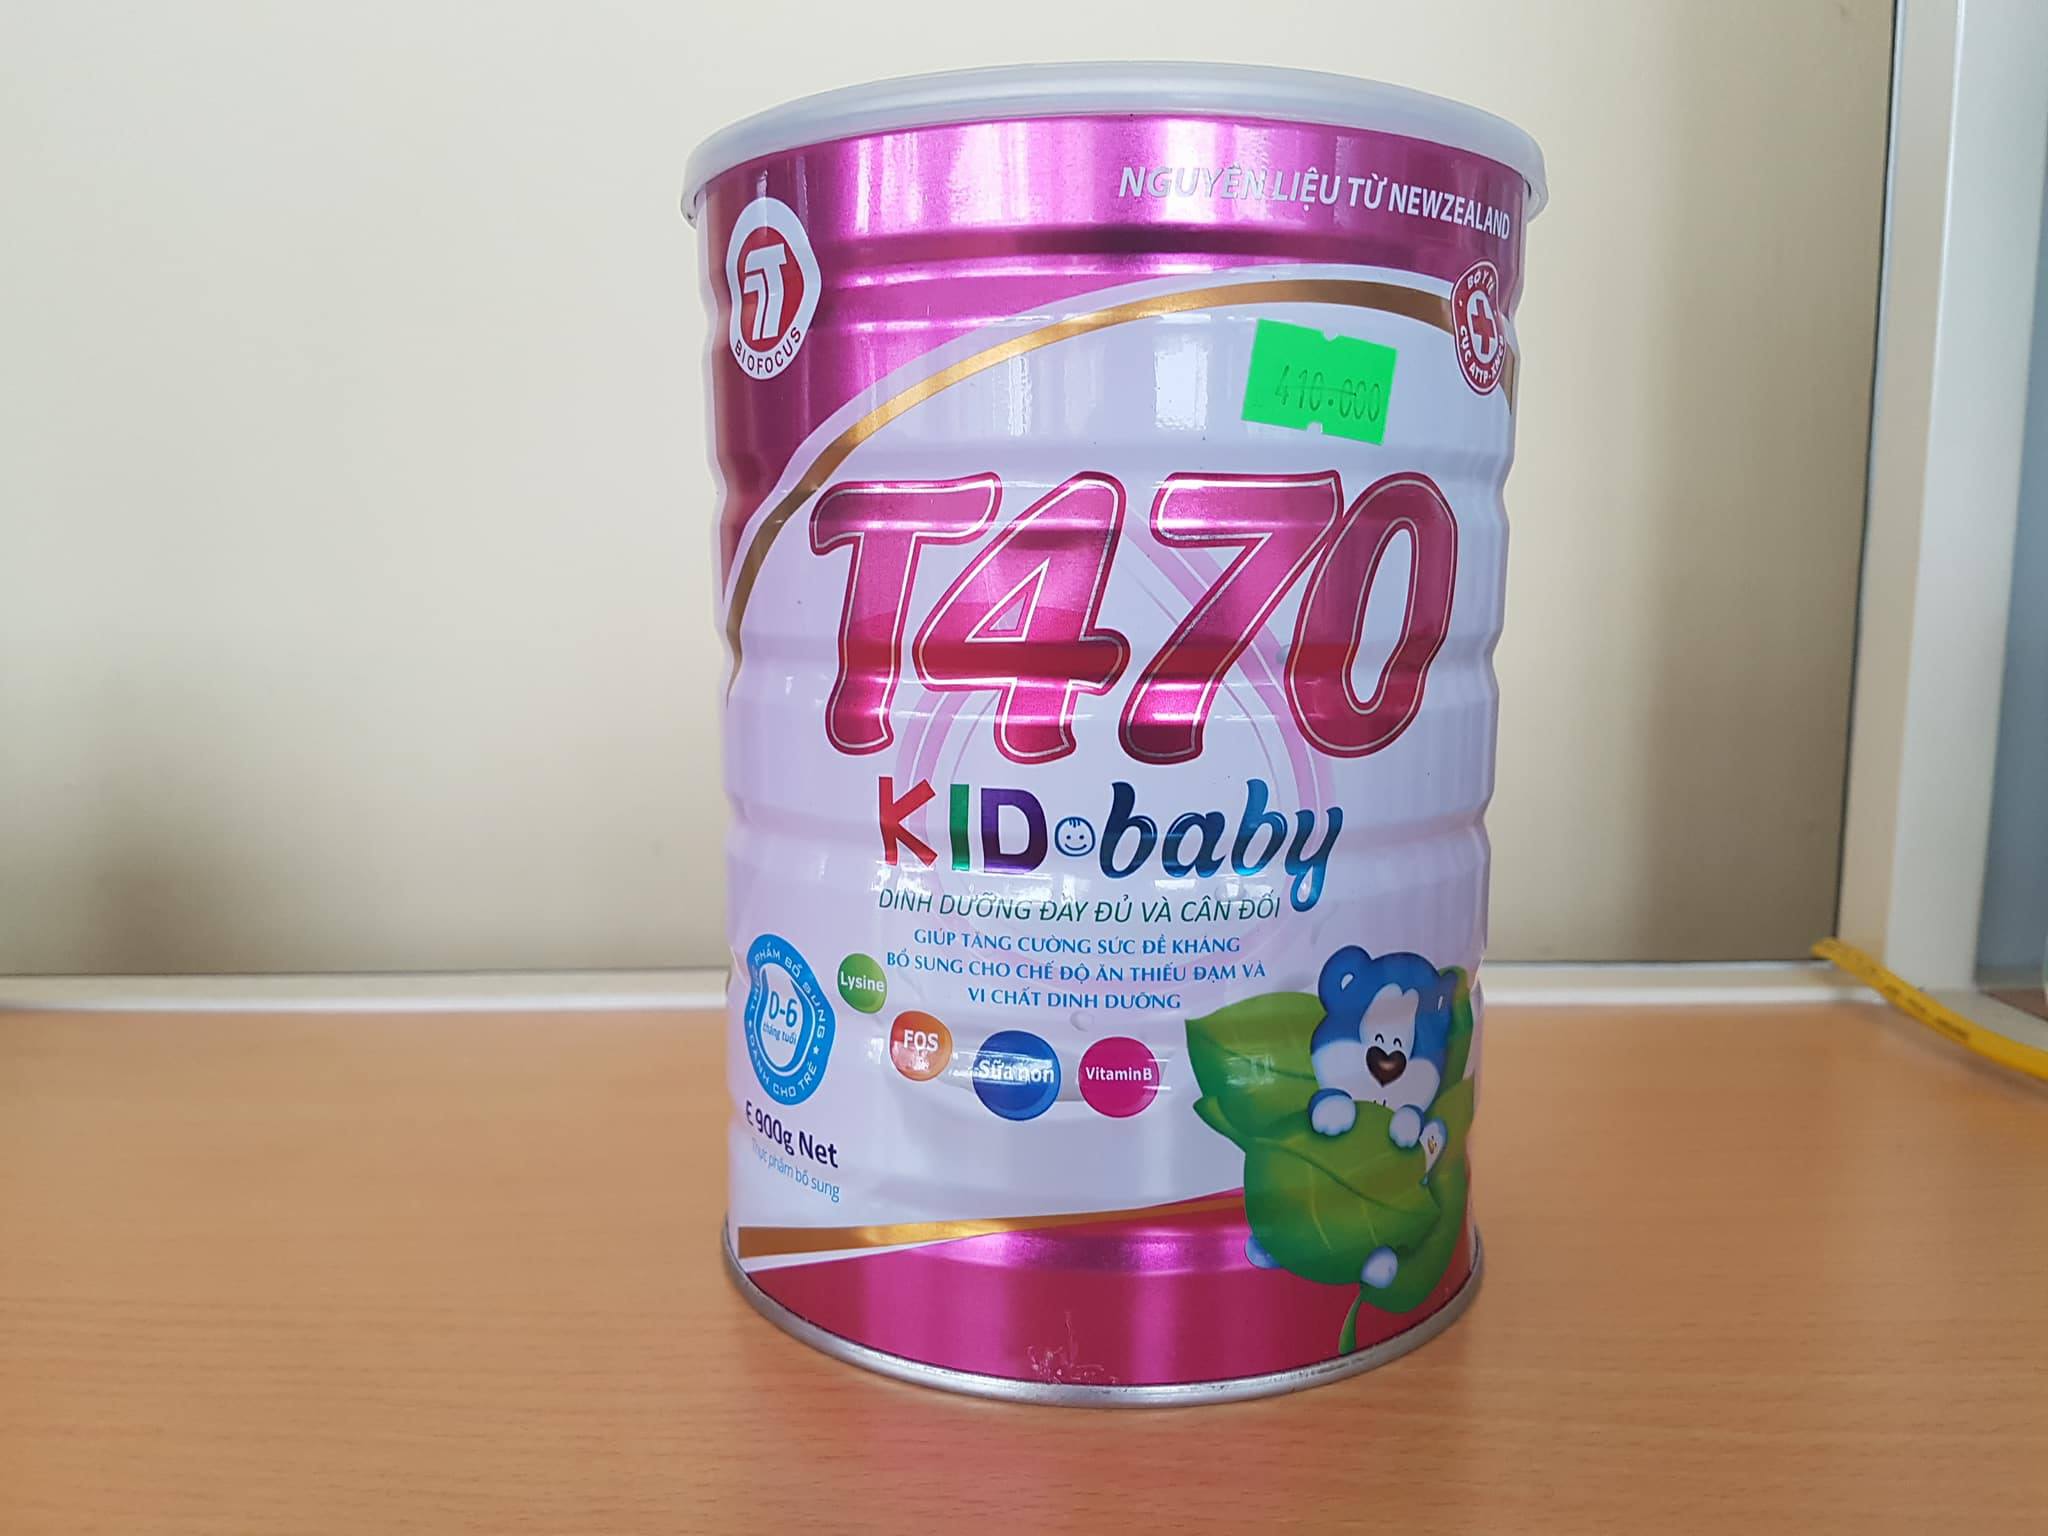 Sữa bột T470 Kid baby 900g dành cho trẻ 0 - 6 tháng tuổi